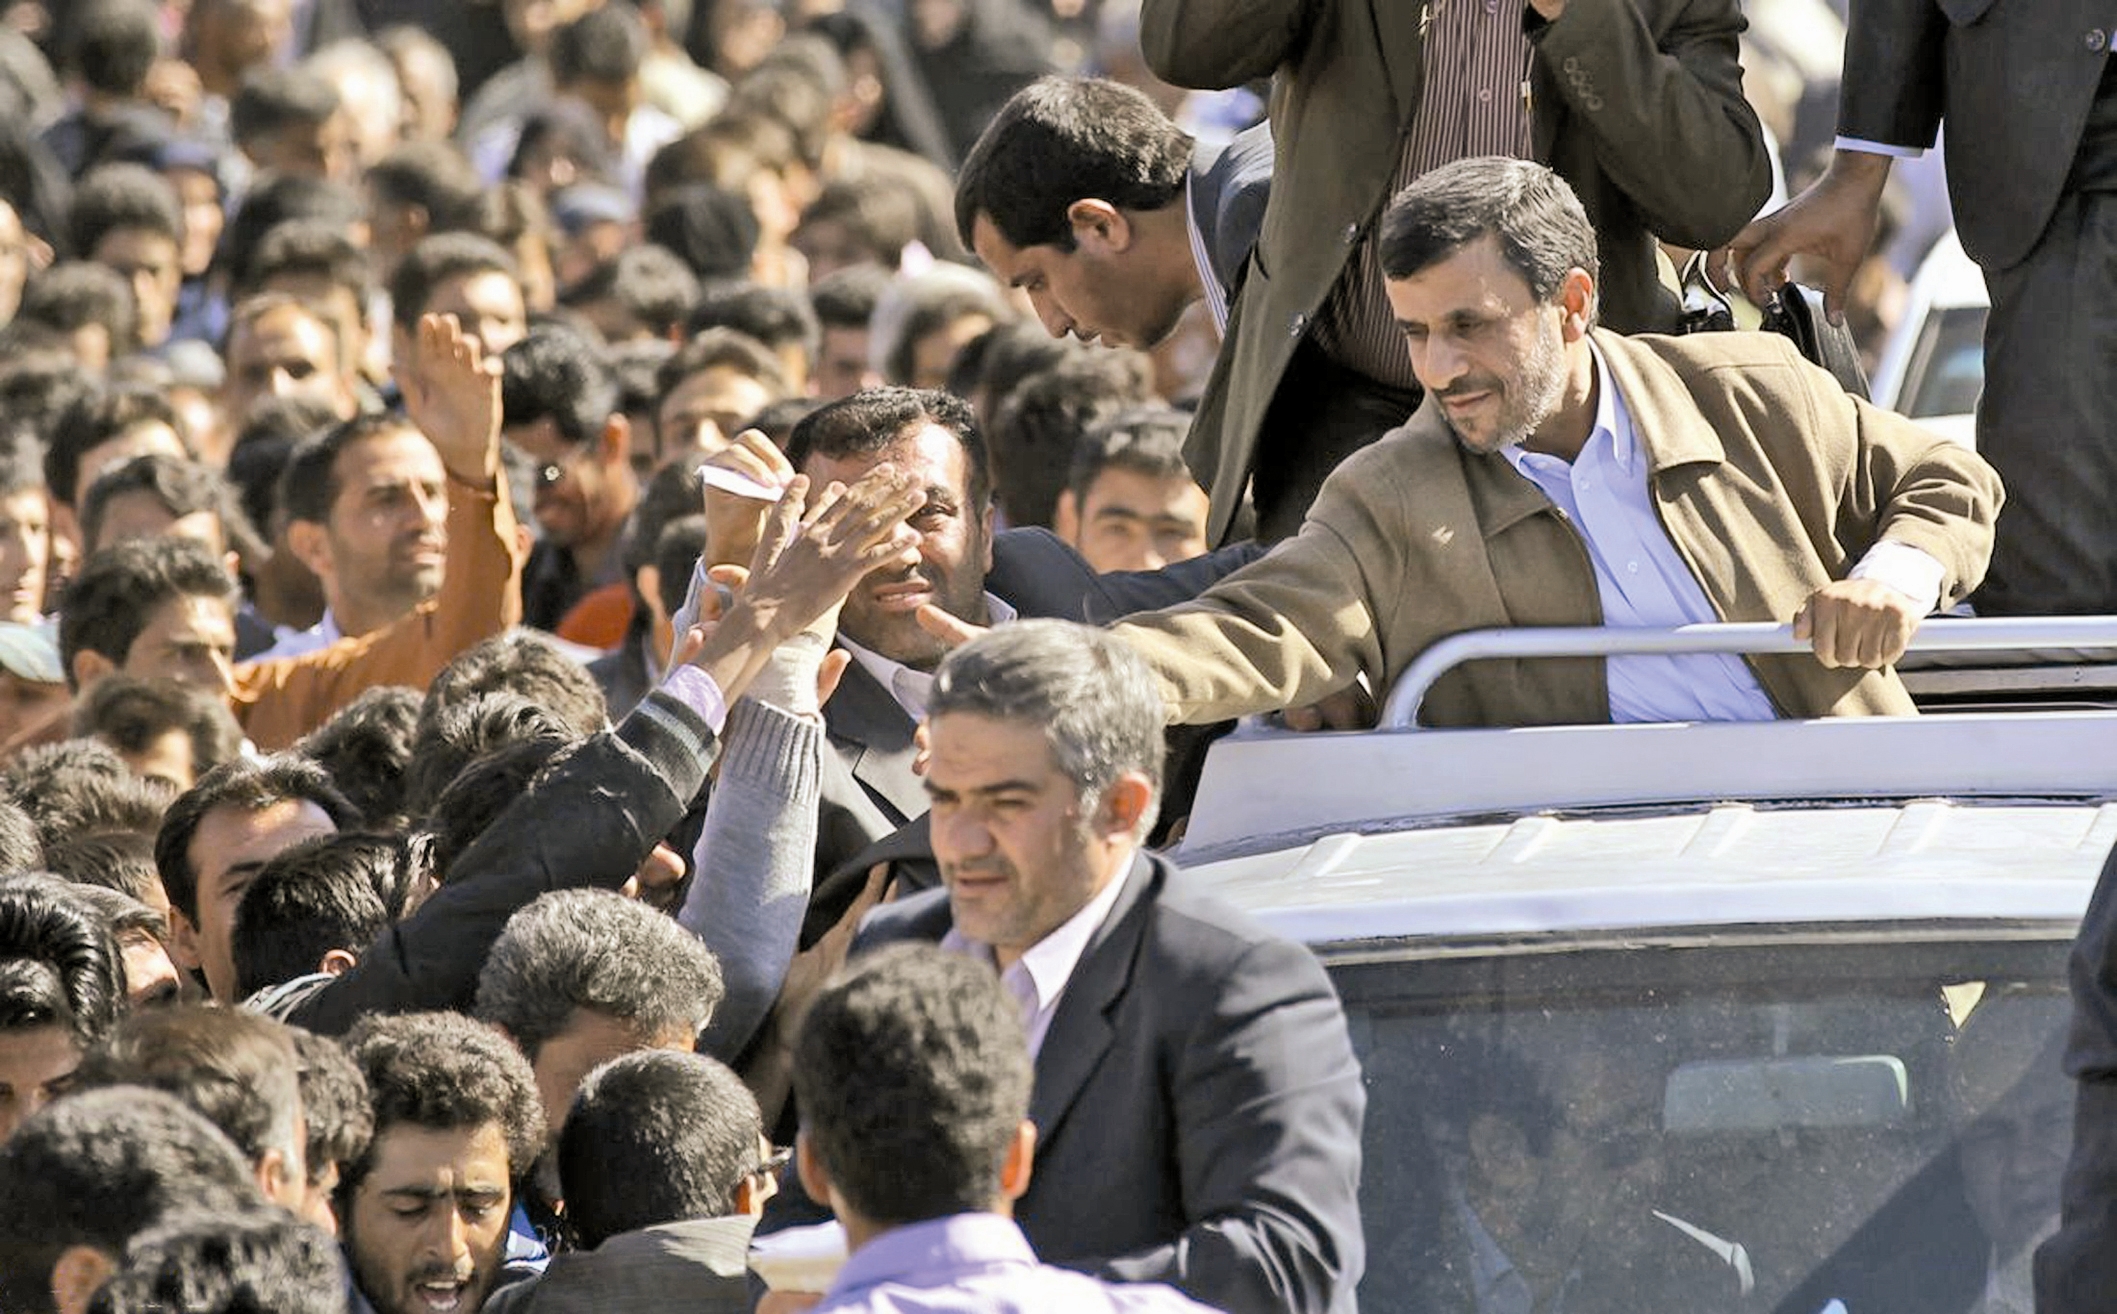 رئیس جمهور - احمدی نژاد